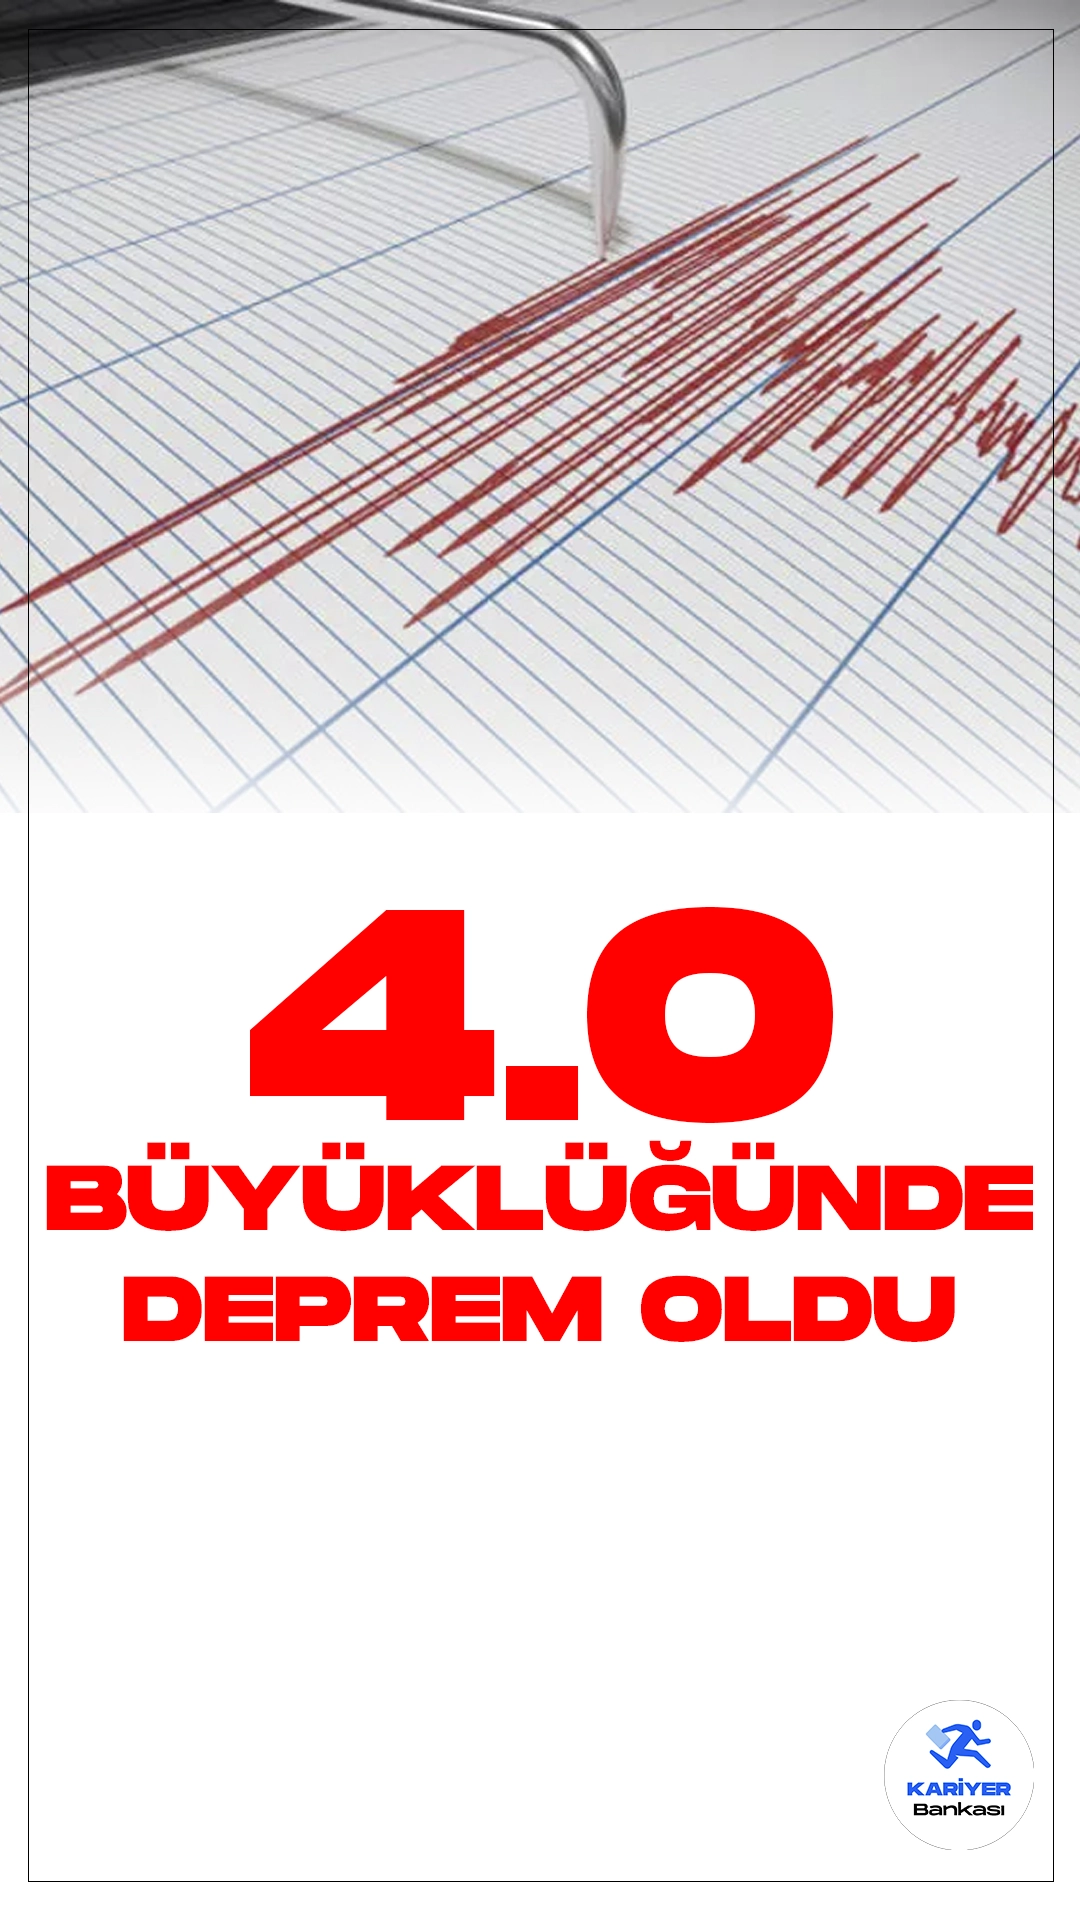 Kayseri'de 4.0 Büyüklüğünde Deprem Oldu. İçişleri Bakanlığı Afet ve Acil Durum Yönetimi Başkanlığı Deprem Dairesi tarafından yayımlana son dakika verilerine göre, Kayseri'nin Yahyalı ilçesinde 4.0 büyüklüğünde deprem meydana geldi.